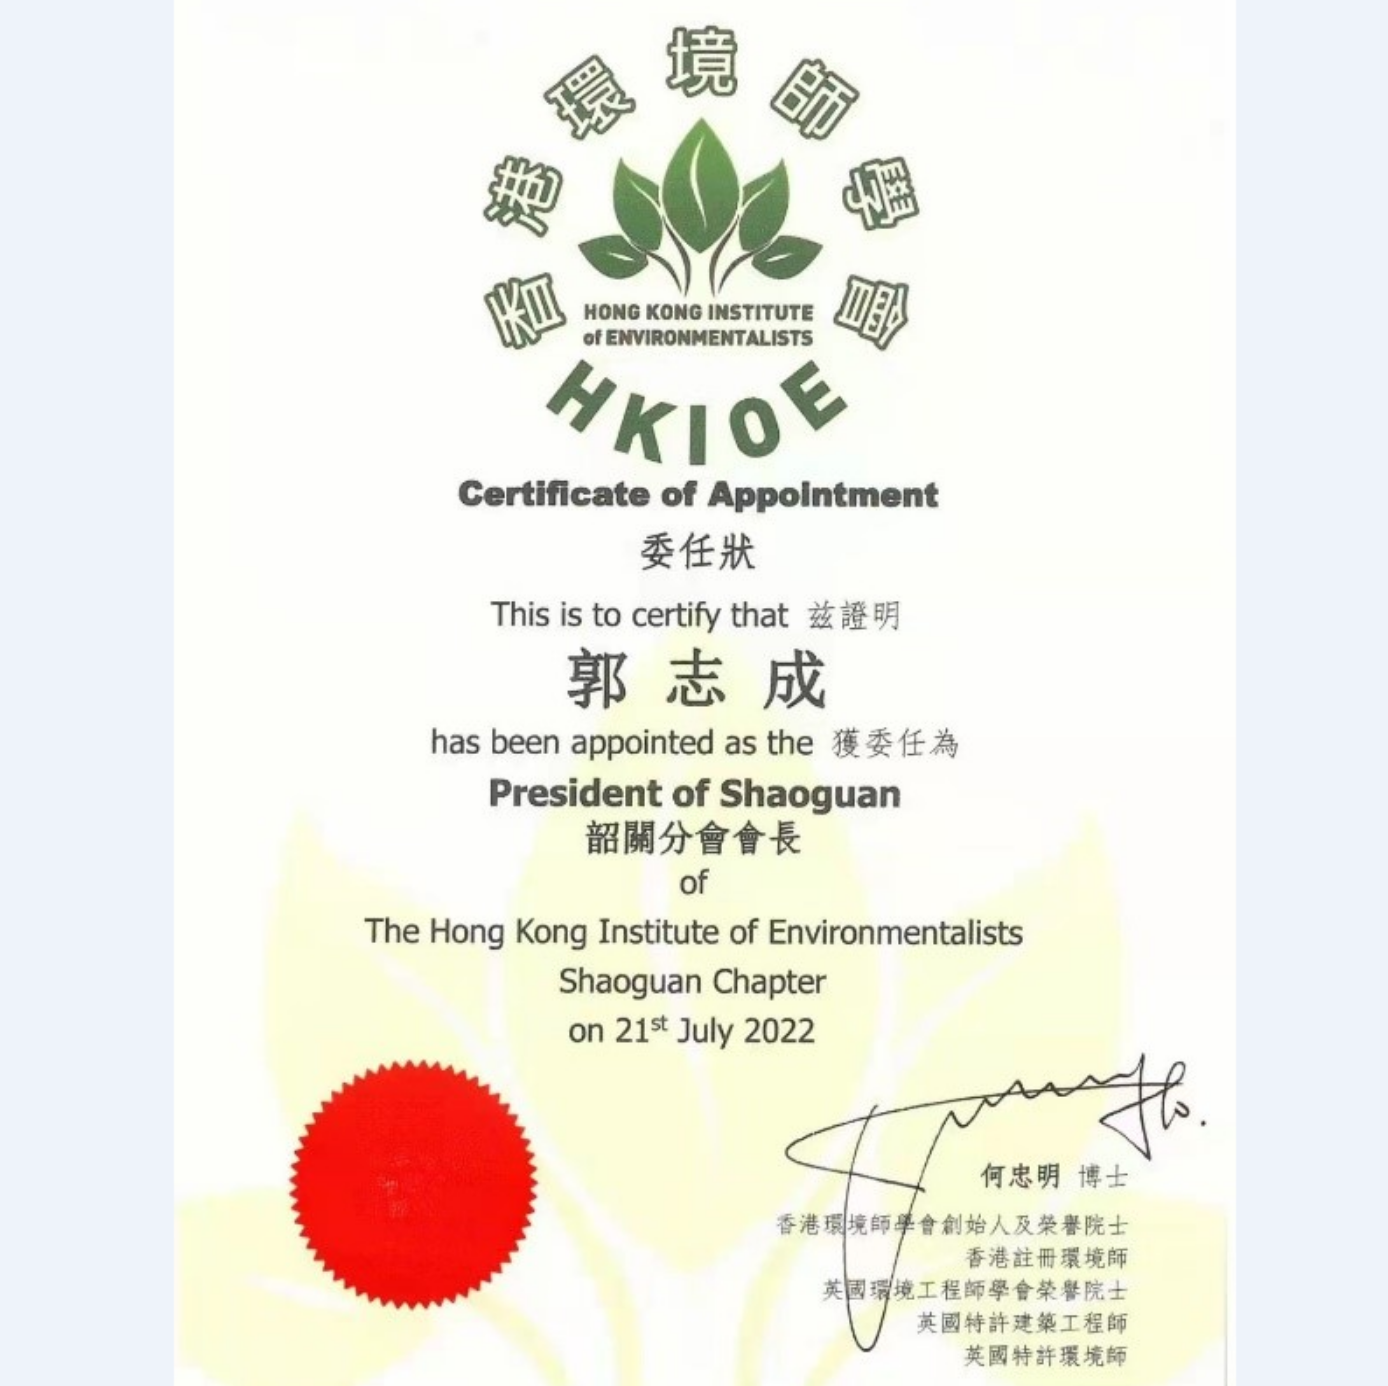 恭贺郭志成（总经理）先生获委任为 香港环境师学会（HKIOE）韶关分会会长